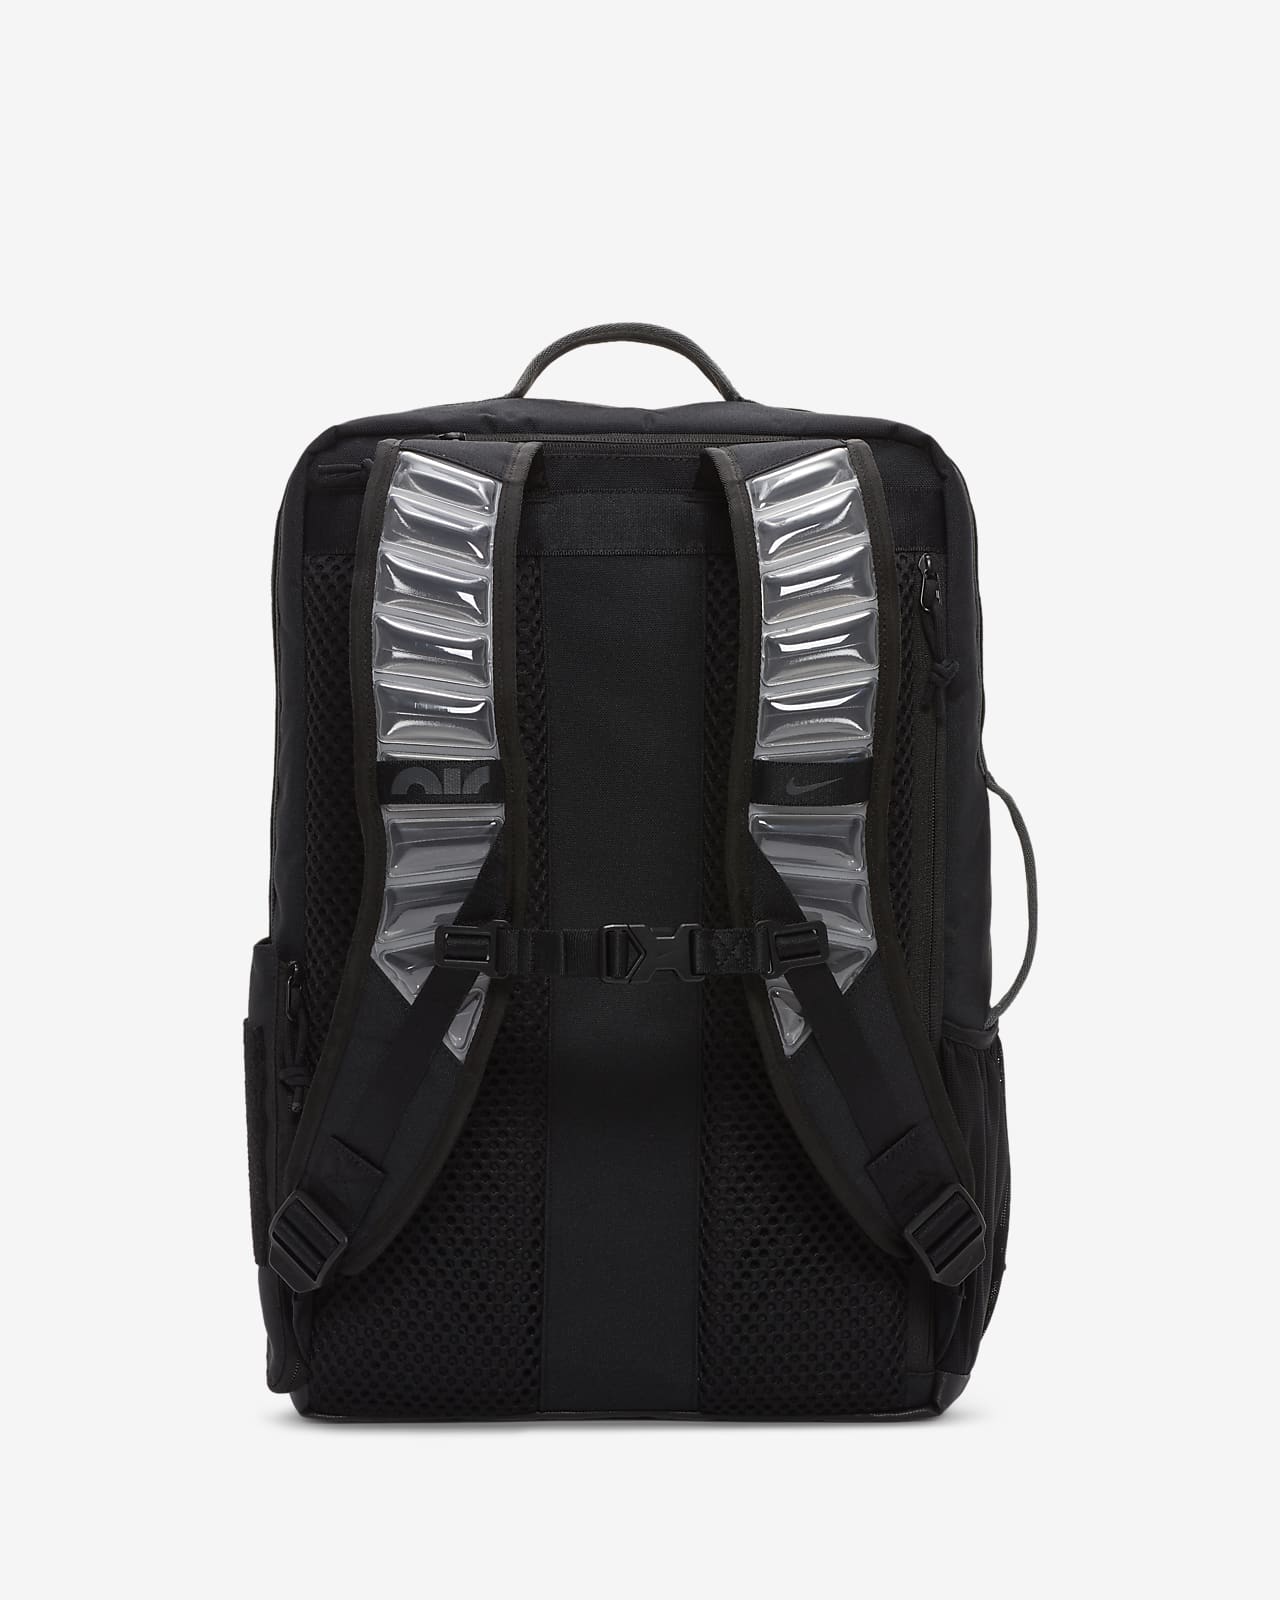 219 nike elite backpack